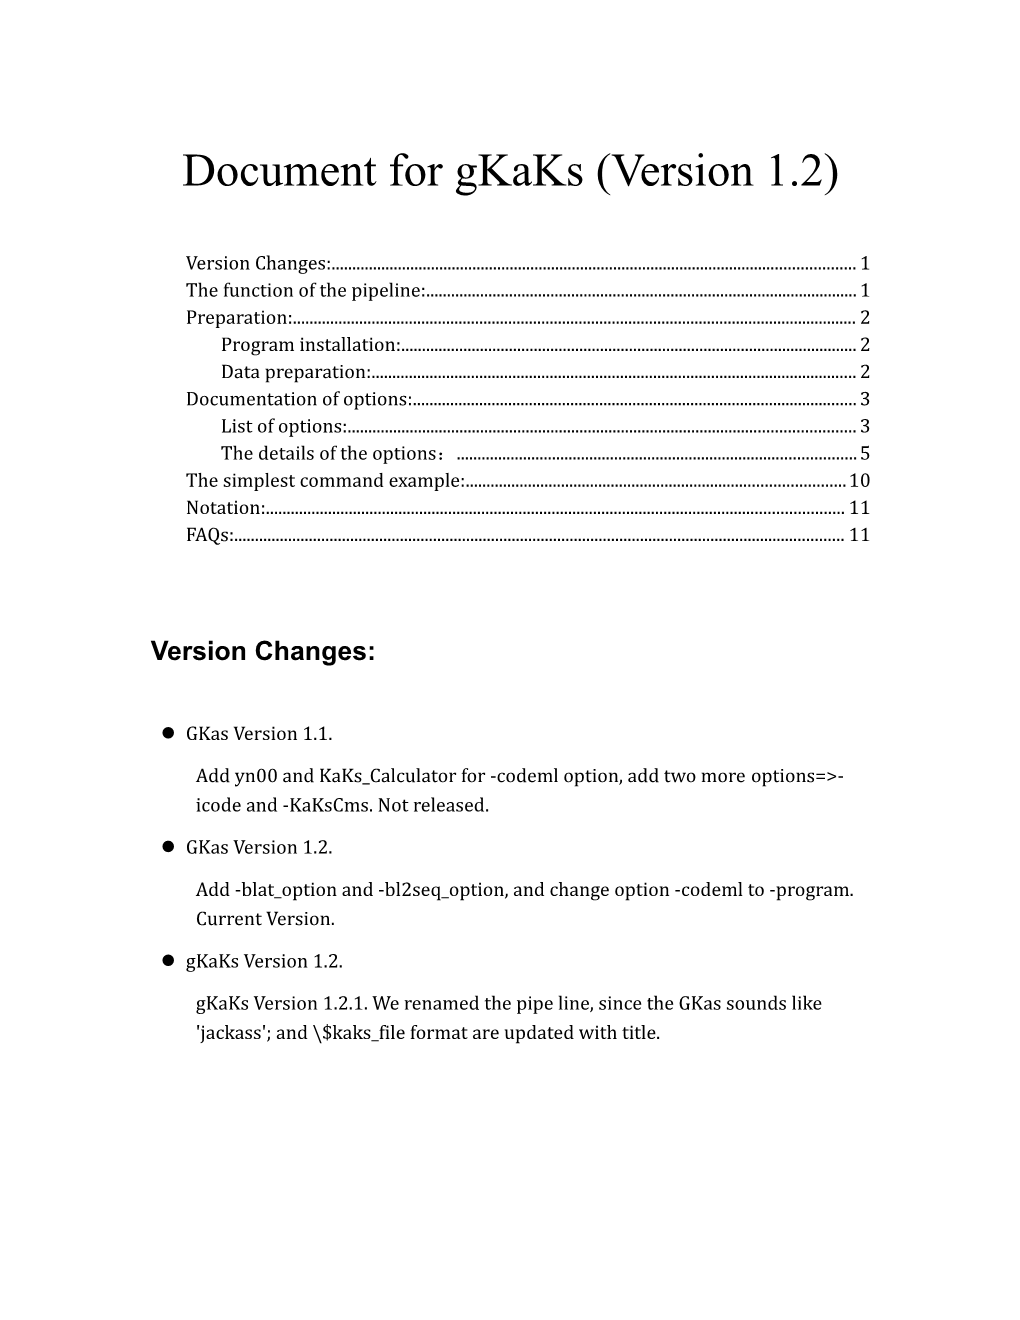 Document for Gkaks (Version 1.2)